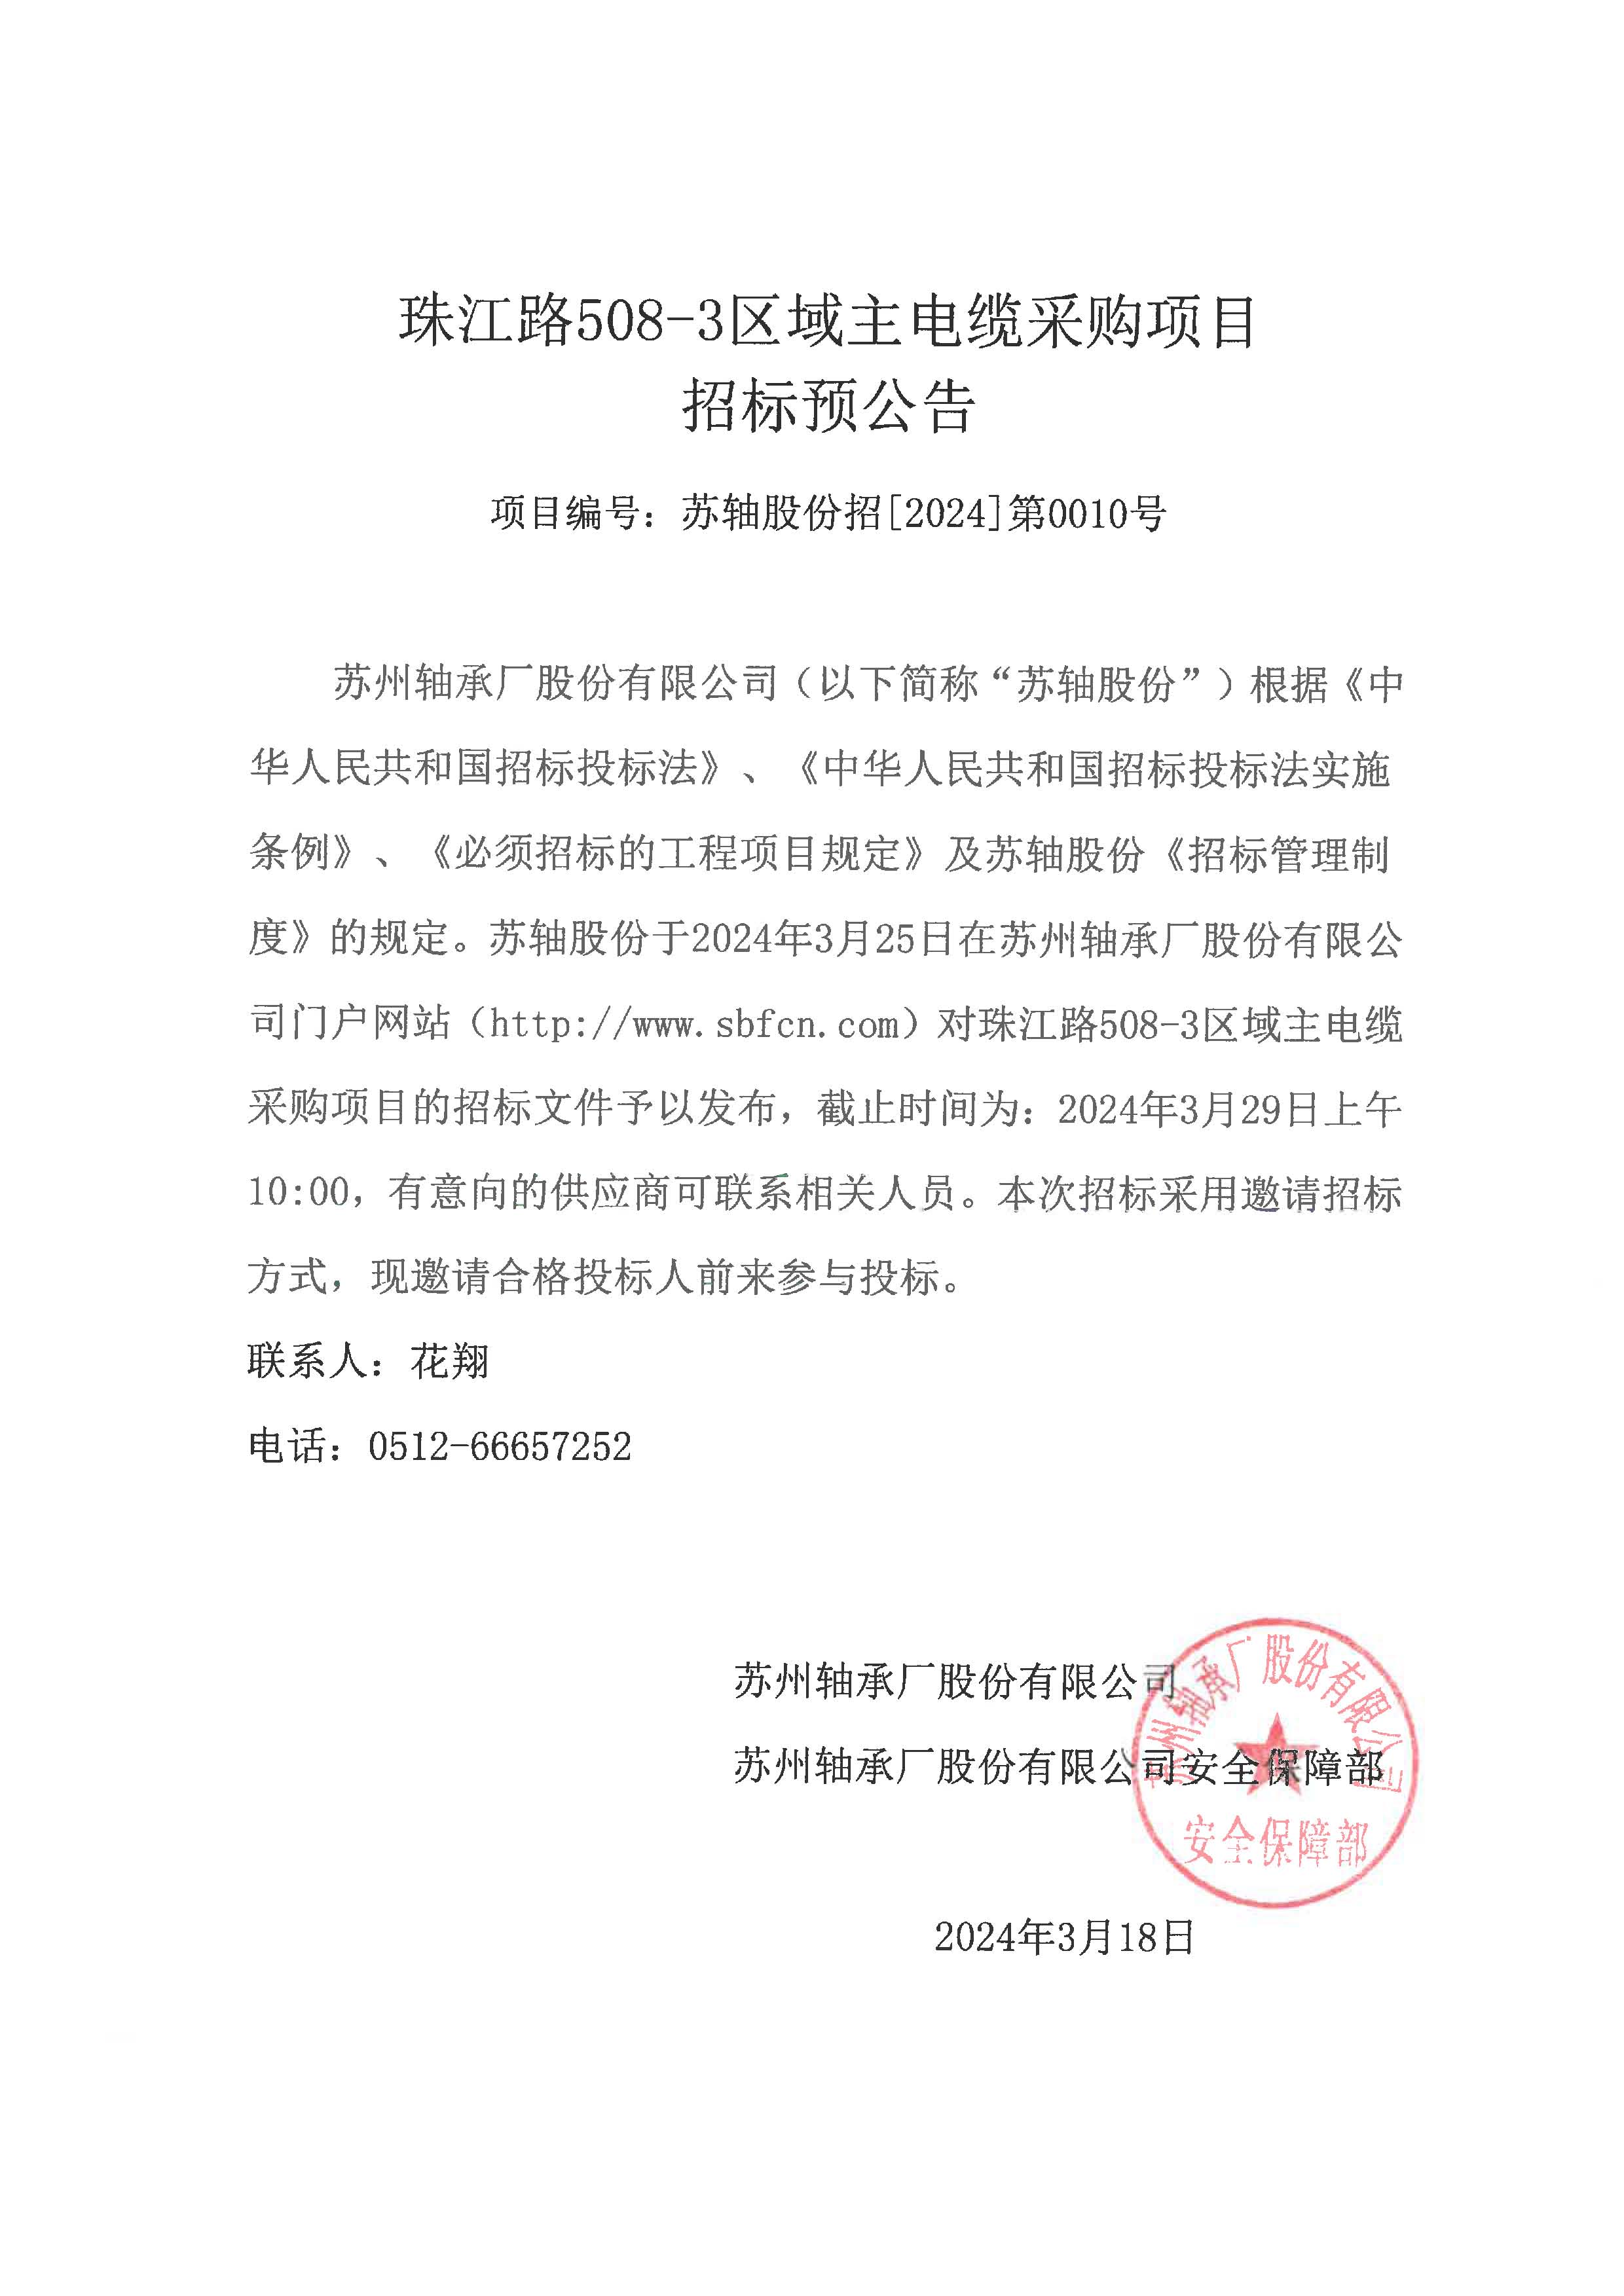 (招标)珠江路508-3区域主电缆采购项目招标预公告